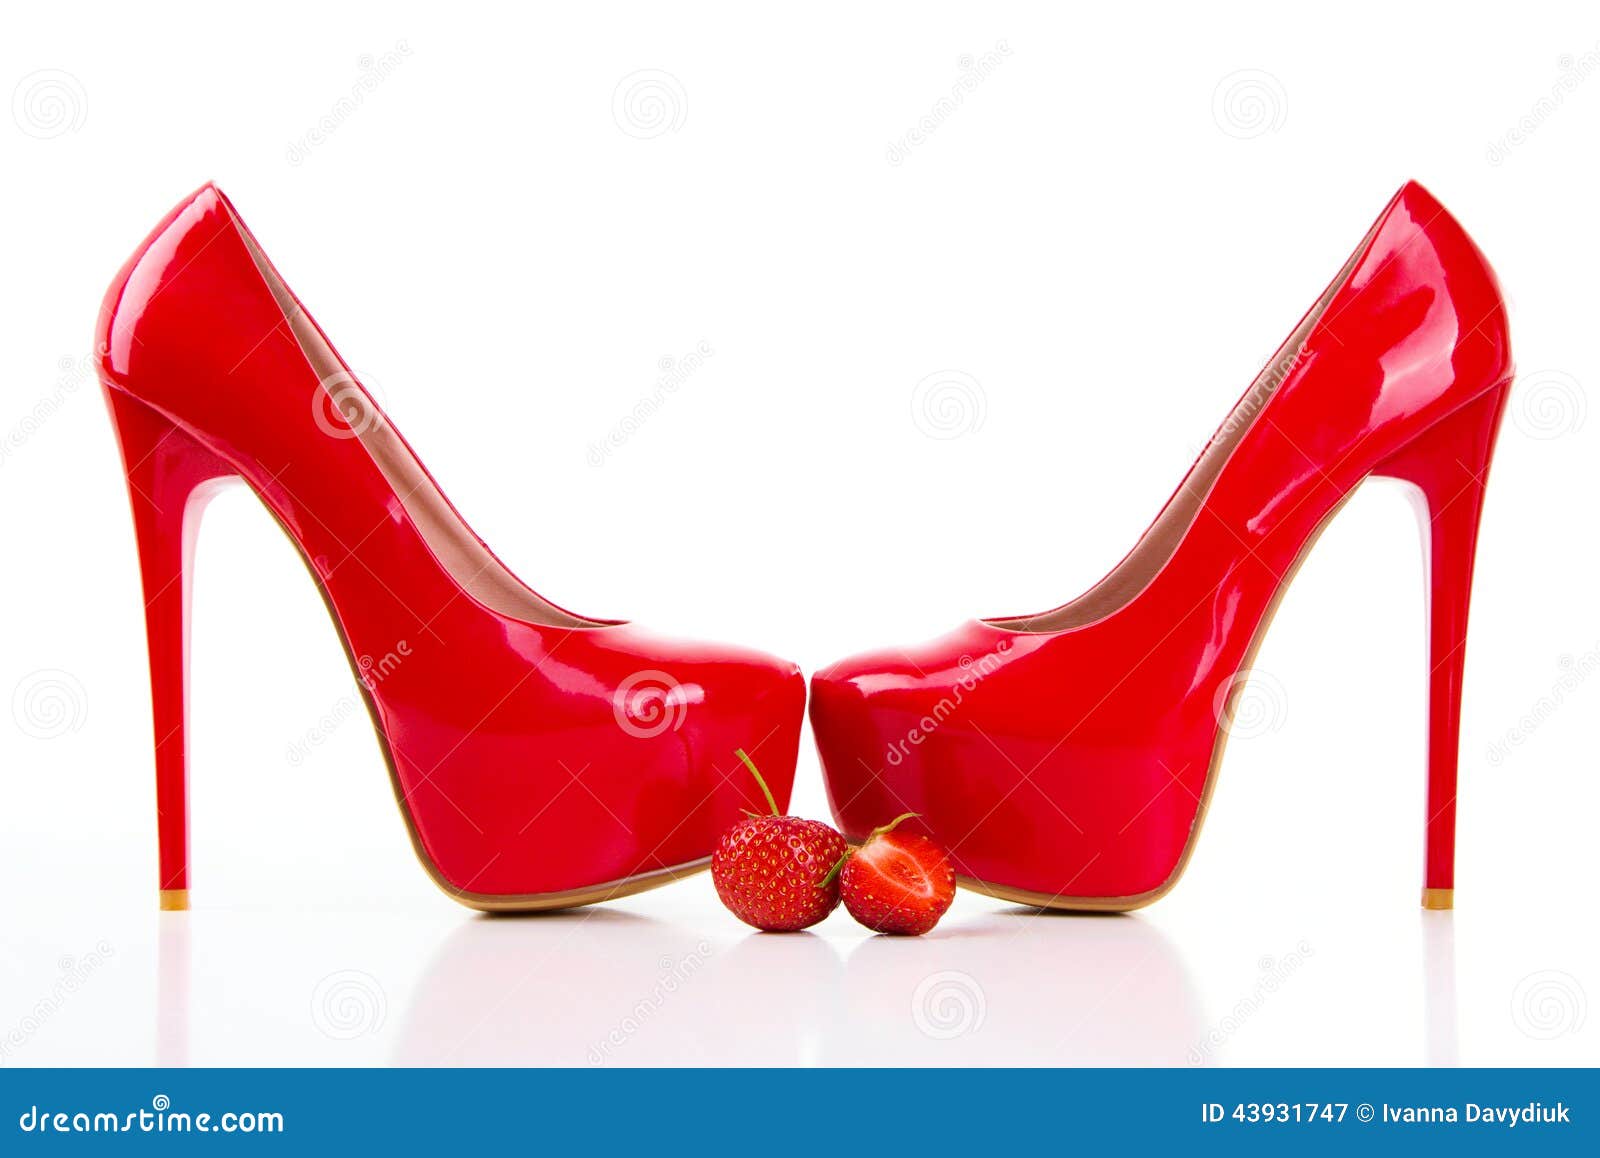 scarpe rosse con il tacco